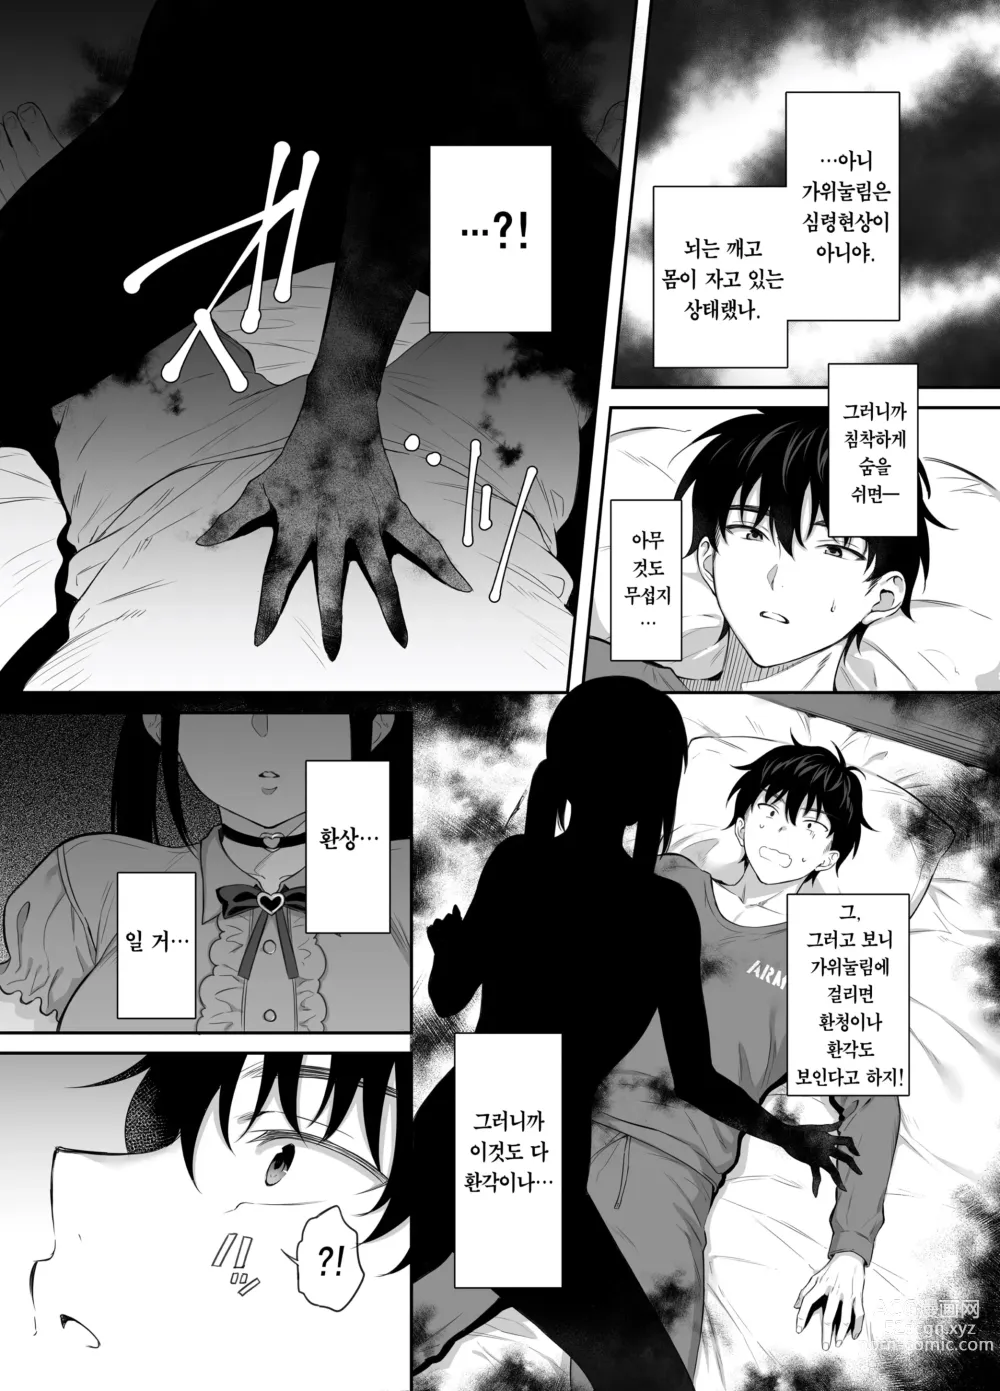 Page 10 of doujinshi 폐허에서 지뢰녀랑 밤새 질내사정 섹스한 이야기 2 (decensored)